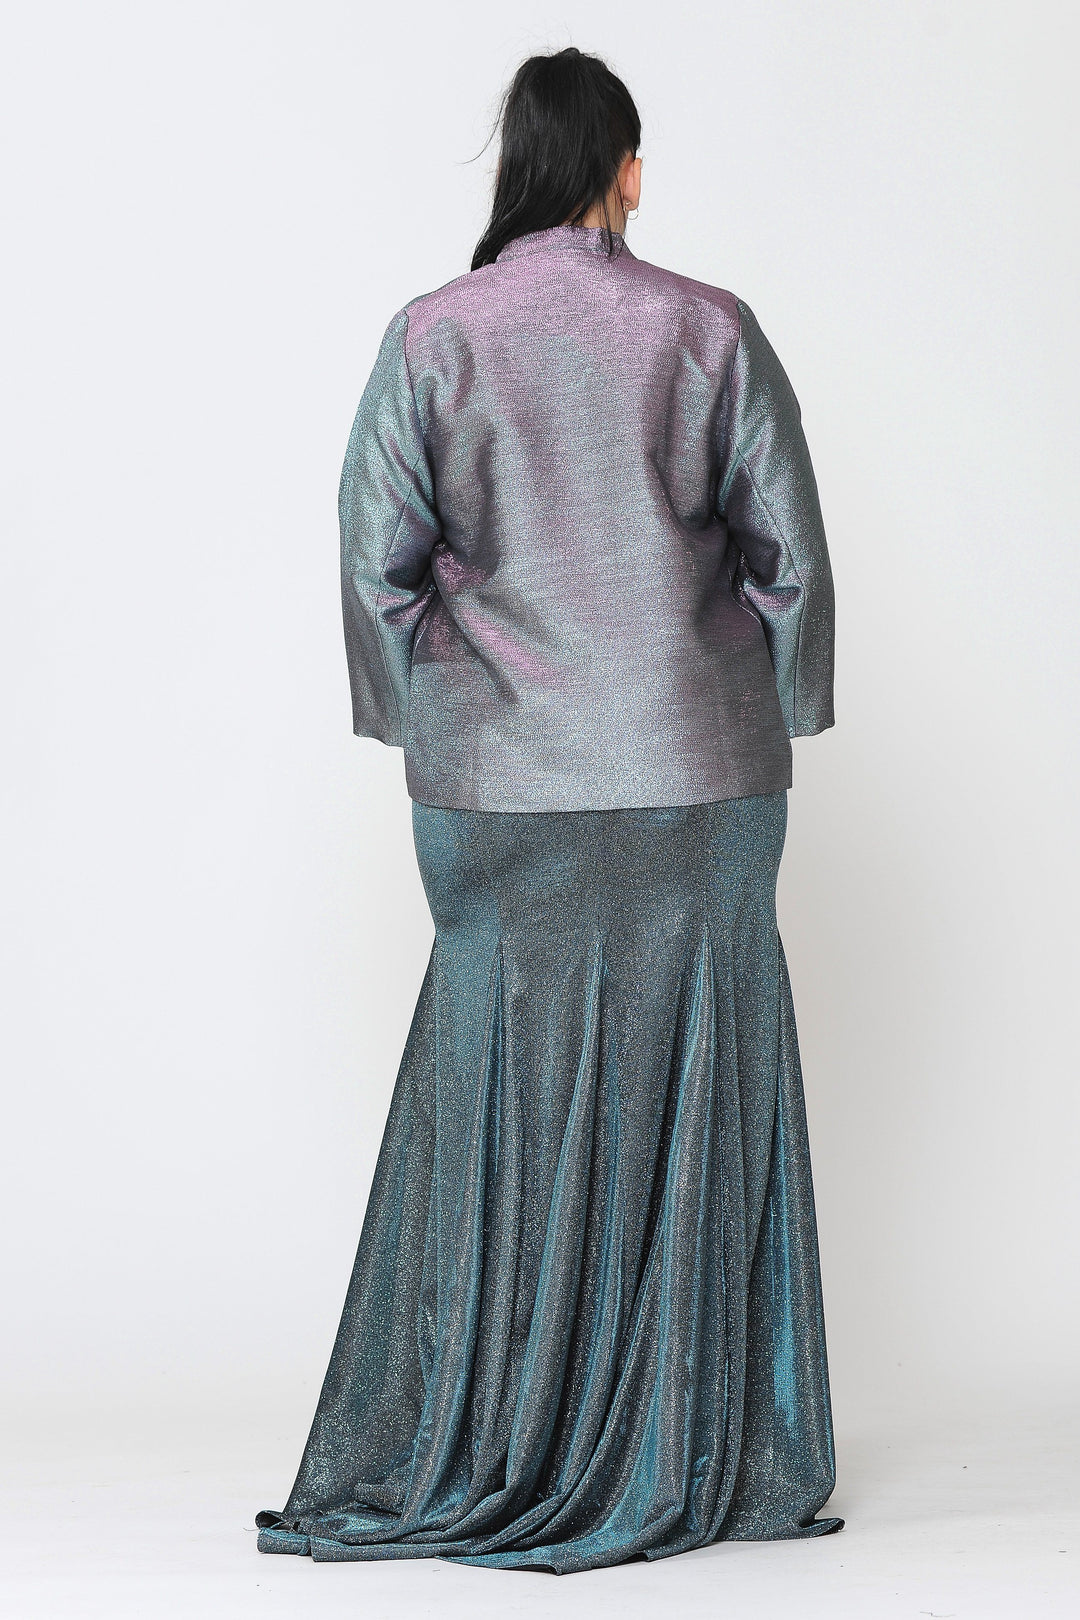 Plus Size Two Tone Metallic Formal Jacket by Poly USA JK1908-Long Formal Dresses-ABC Fashion